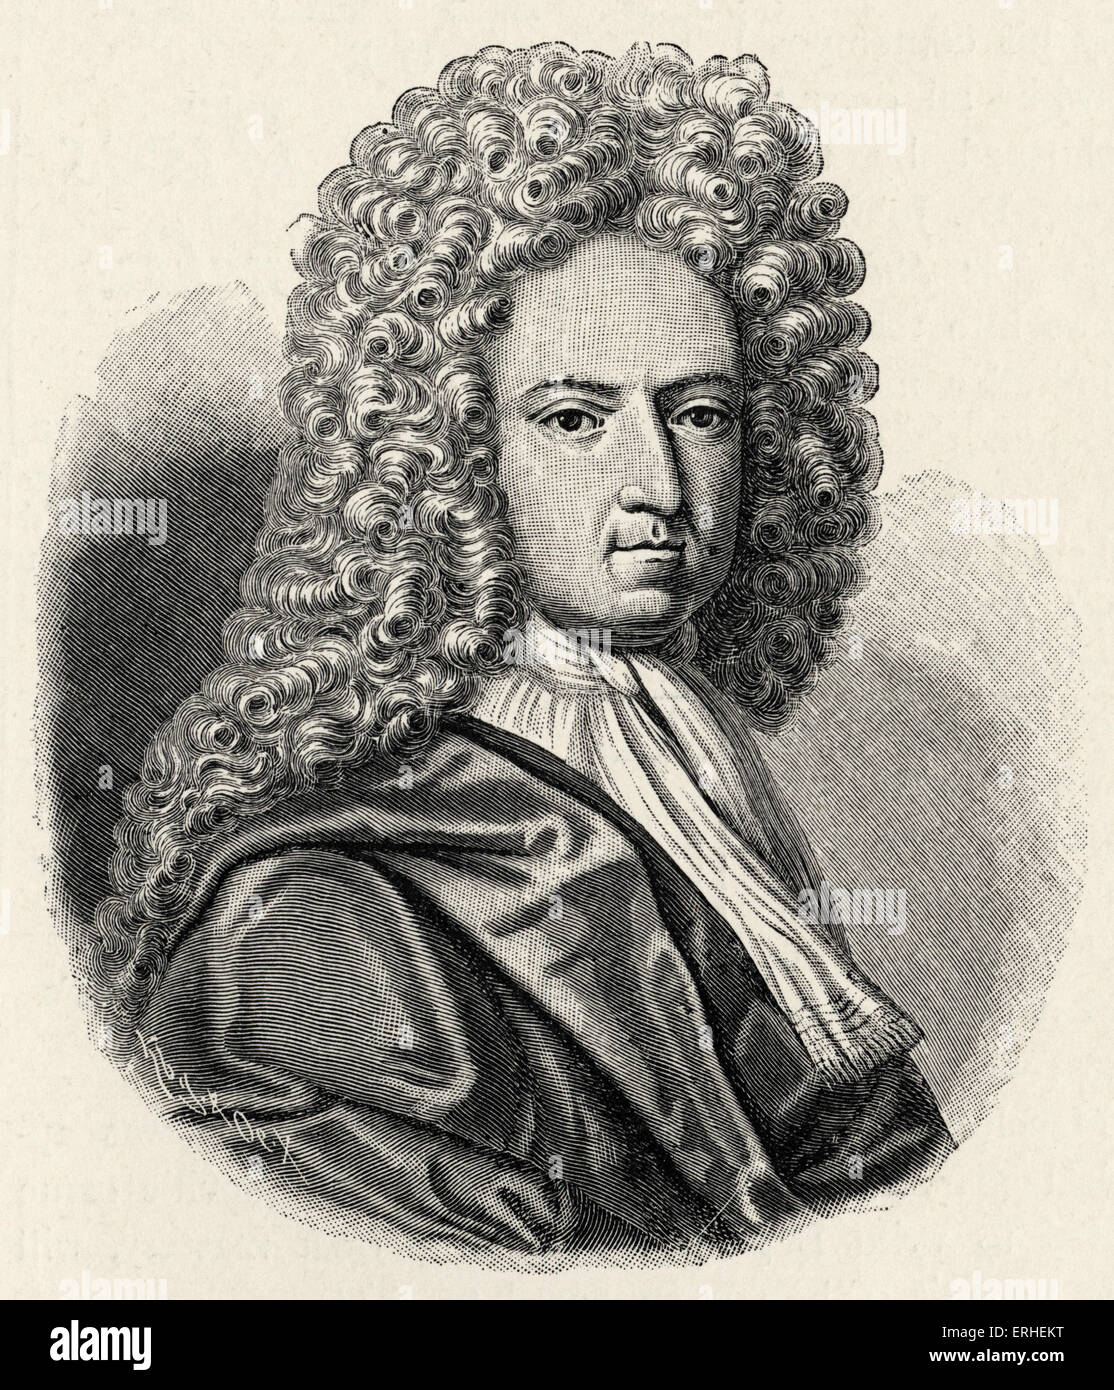 Daniel Defoe - retrato. Escritor y periodista inglés 1660-1731 Foto de stock